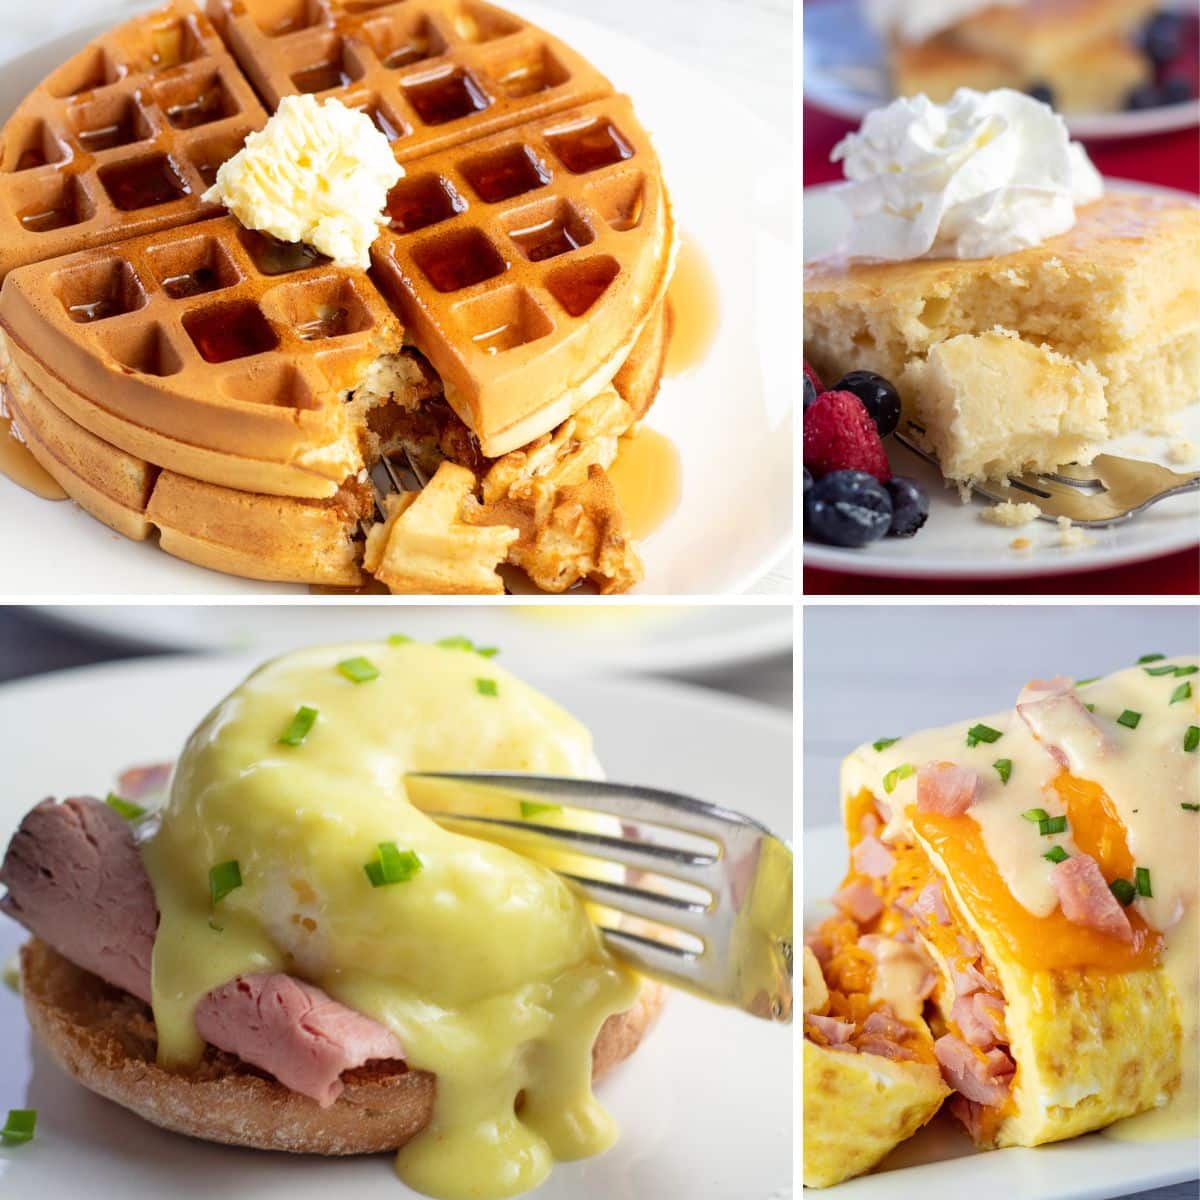 Un collage de recettes de brunch pour la fête des mères avec 4 choix de petit-déjeuner sucrés et salés illustrés.